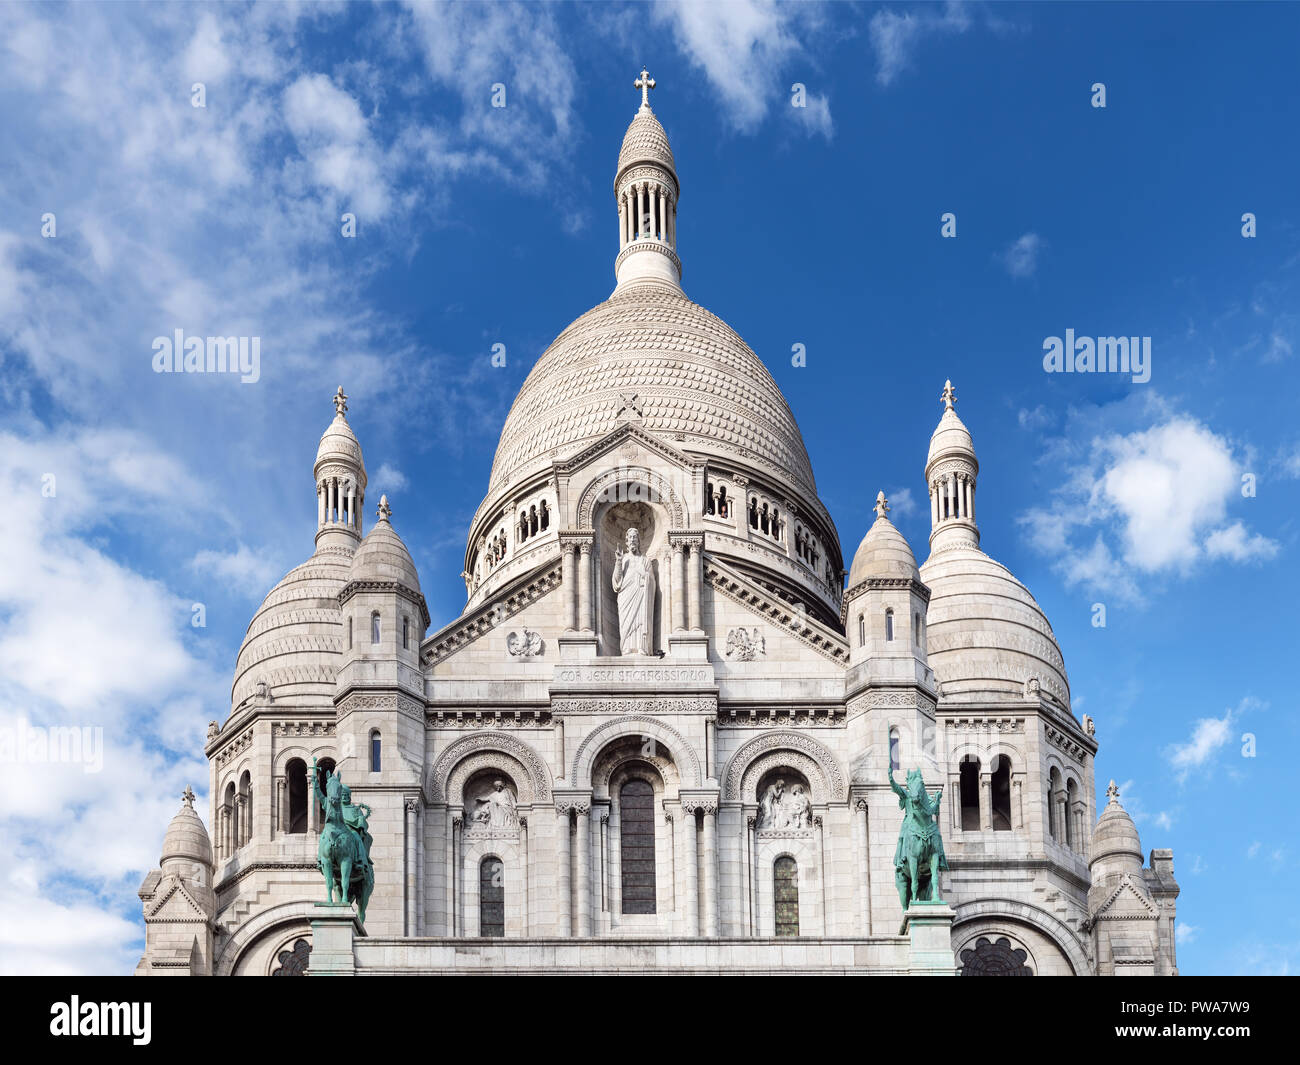 Sacre Coeur Basilica on Montmartre hill - Paris, France Stock Photo